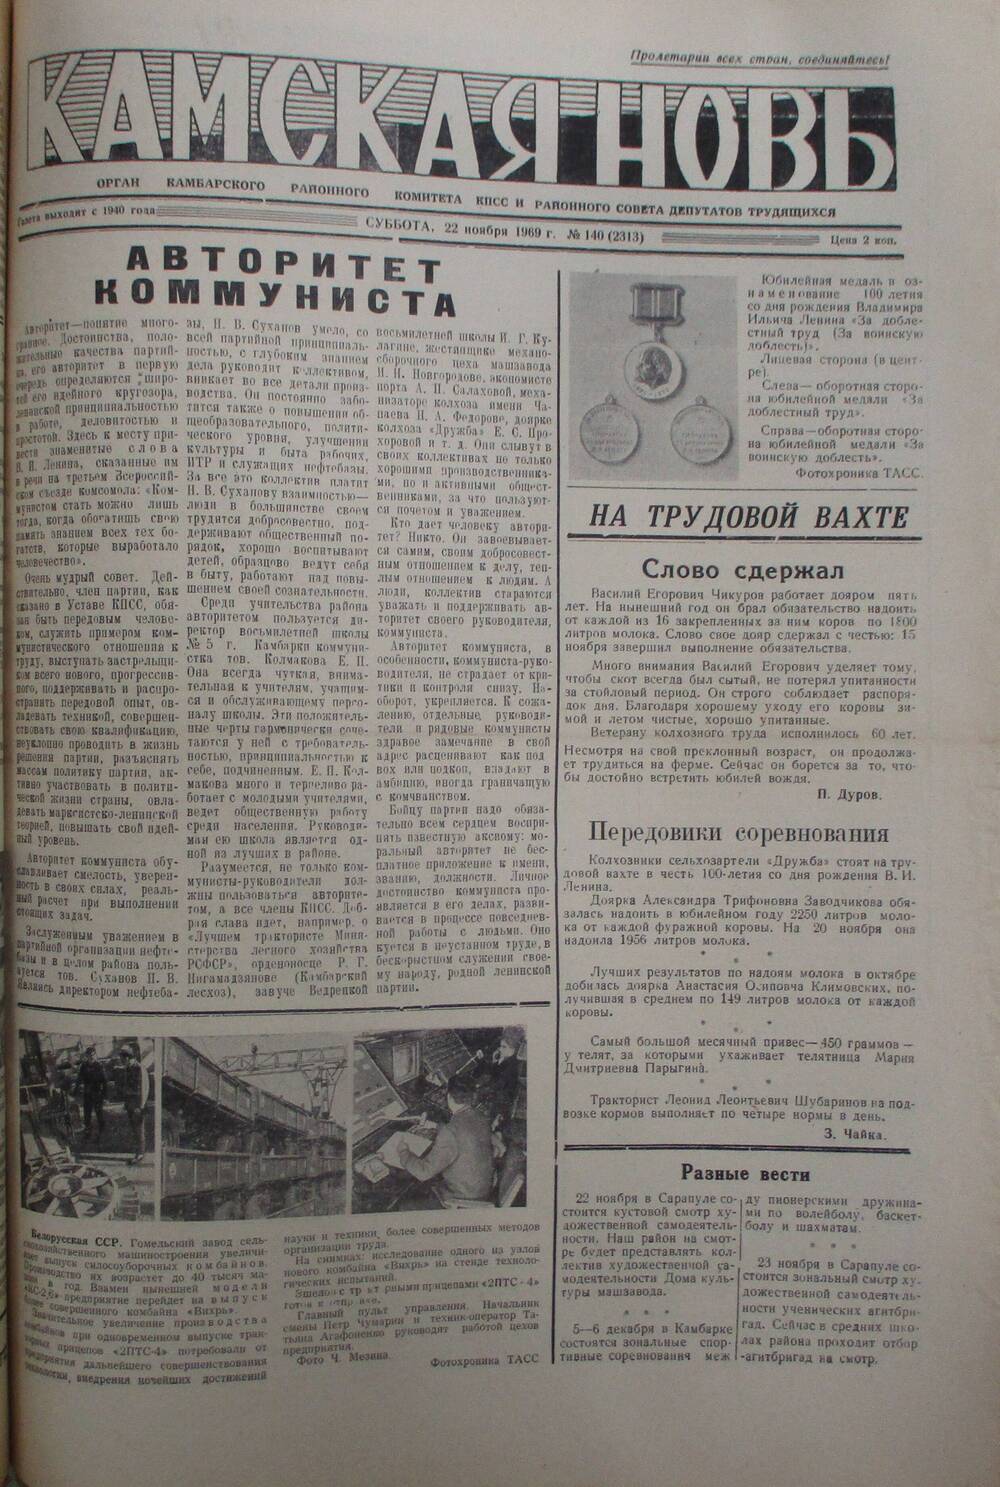 Газеты Камская новь за 1969 год, орган Камбарского райсовета и  РККПСС, с №1 по №66, с №68 по №156. №140.